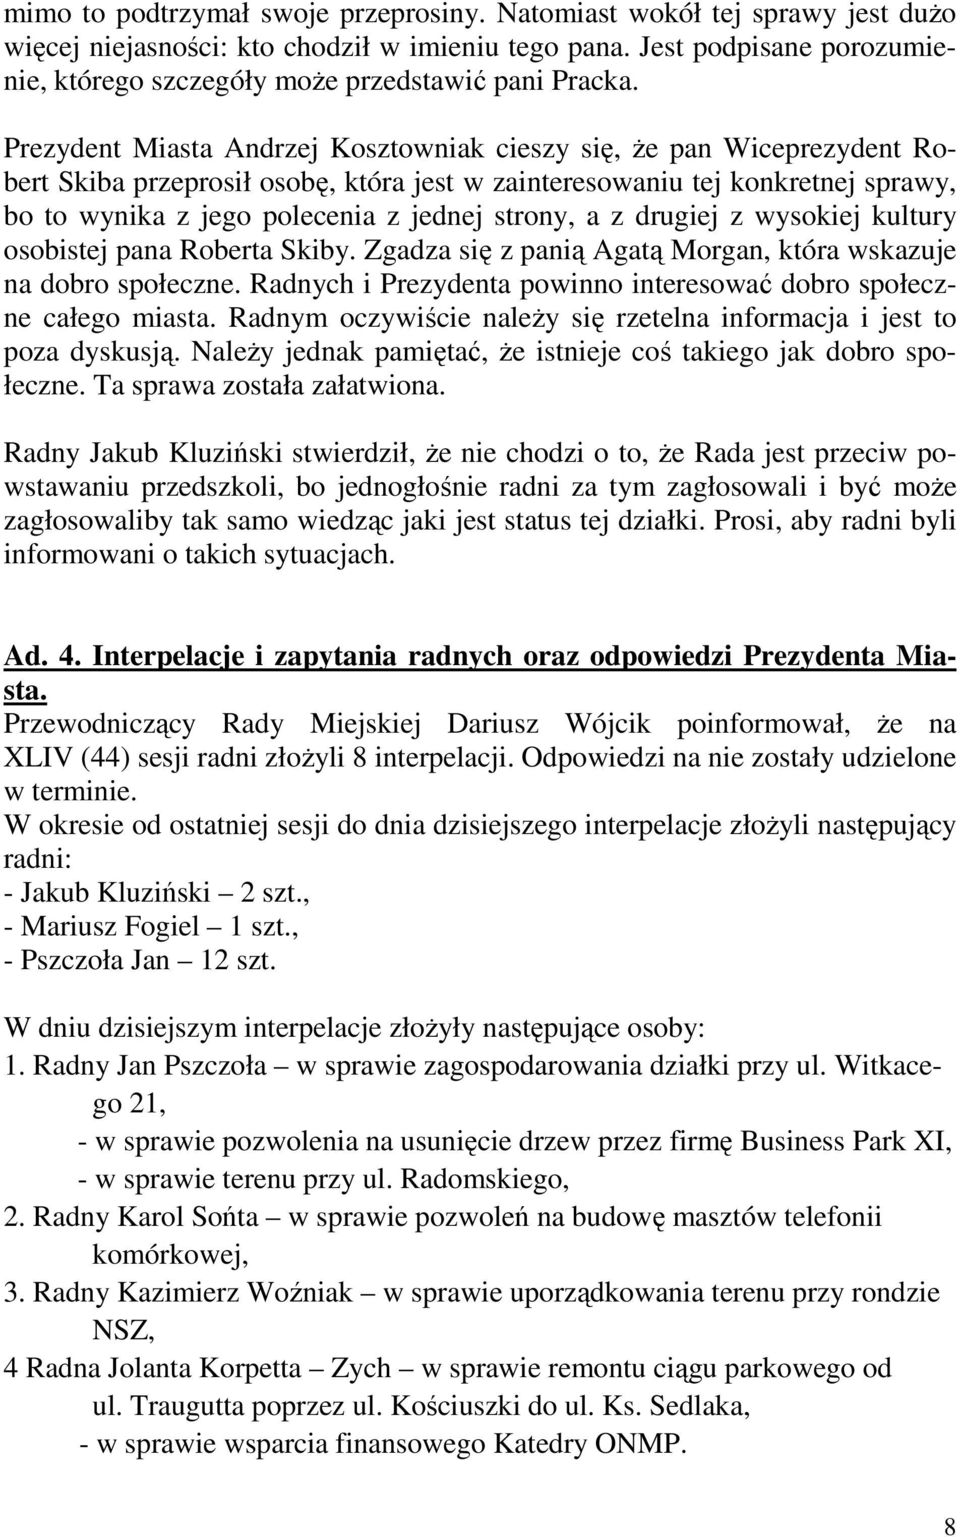 Prezydent Miasta Andrzej Kosztowniak cieszy się, Ŝe pan Wiceprezydent Robert Skiba przeprosił osobę, która jest w zainteresowaniu tej konkretnej sprawy, bo to wynika z jego polecenia z jednej strony,